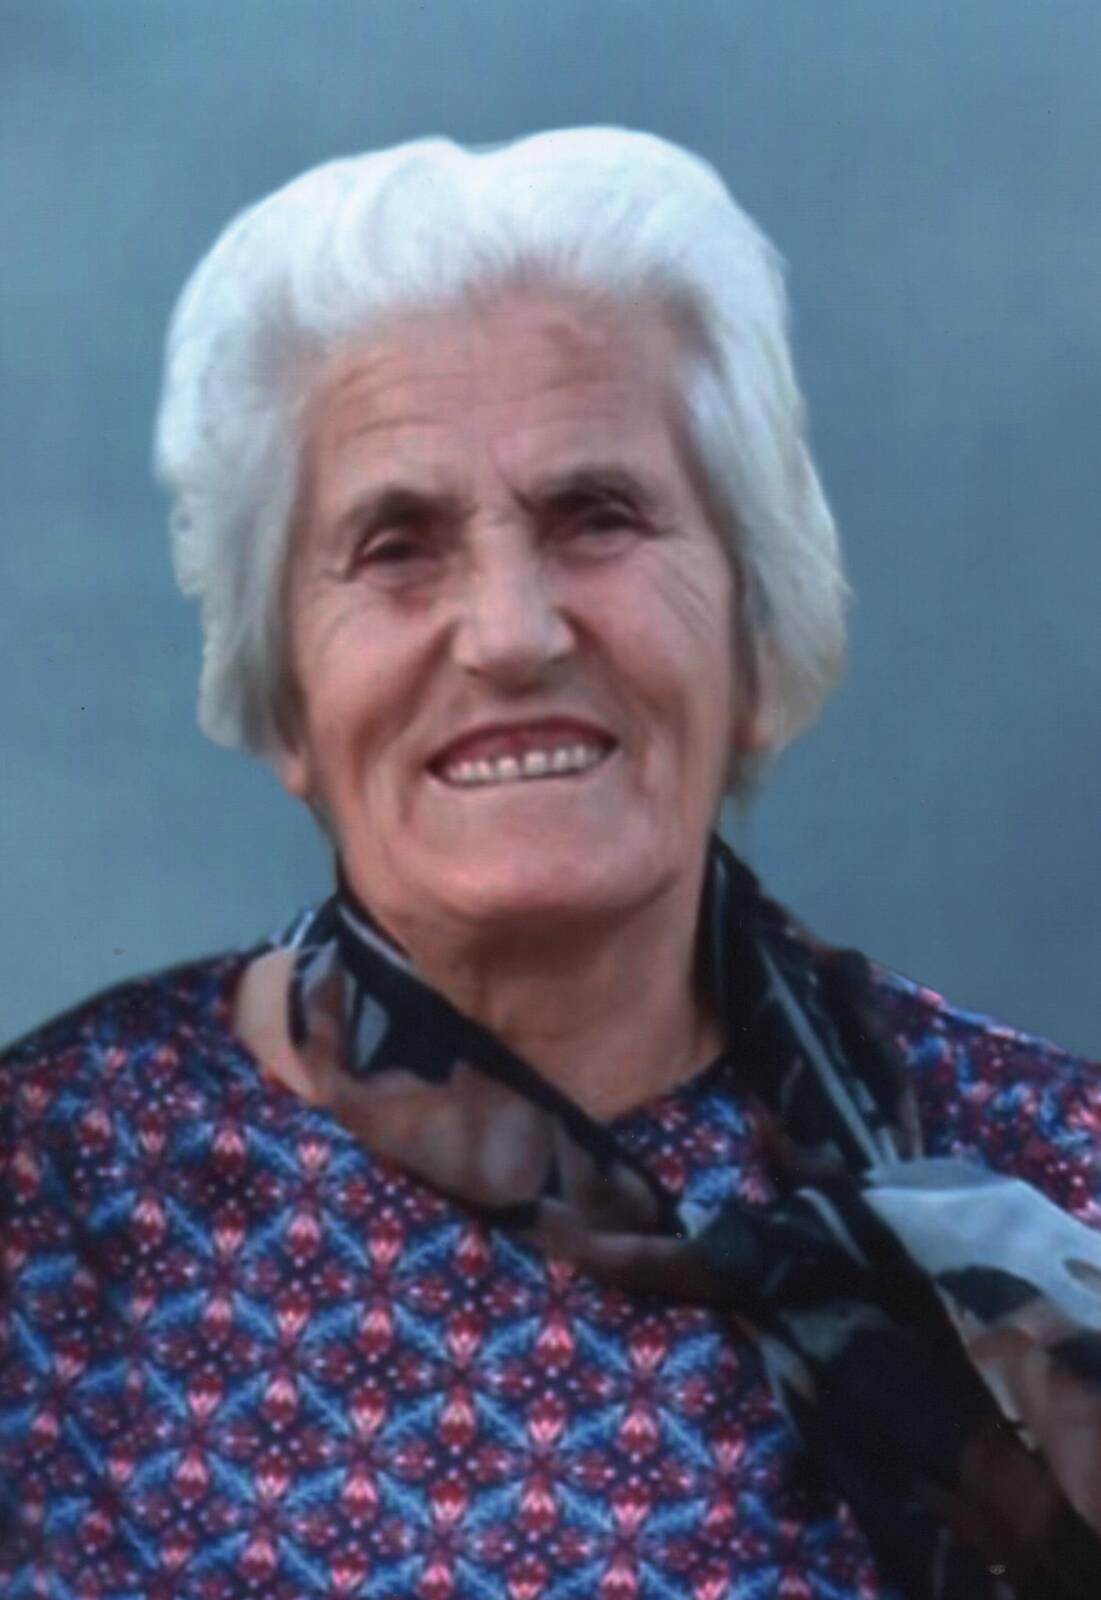 Έφυγε από την ζωή η Άννα Λιάκου (πρεσβυτέρα) σε ηλικία 87 ετών – Η κηδεία θα τελεστεί την Κυριακή 22 Οκτωβρίου